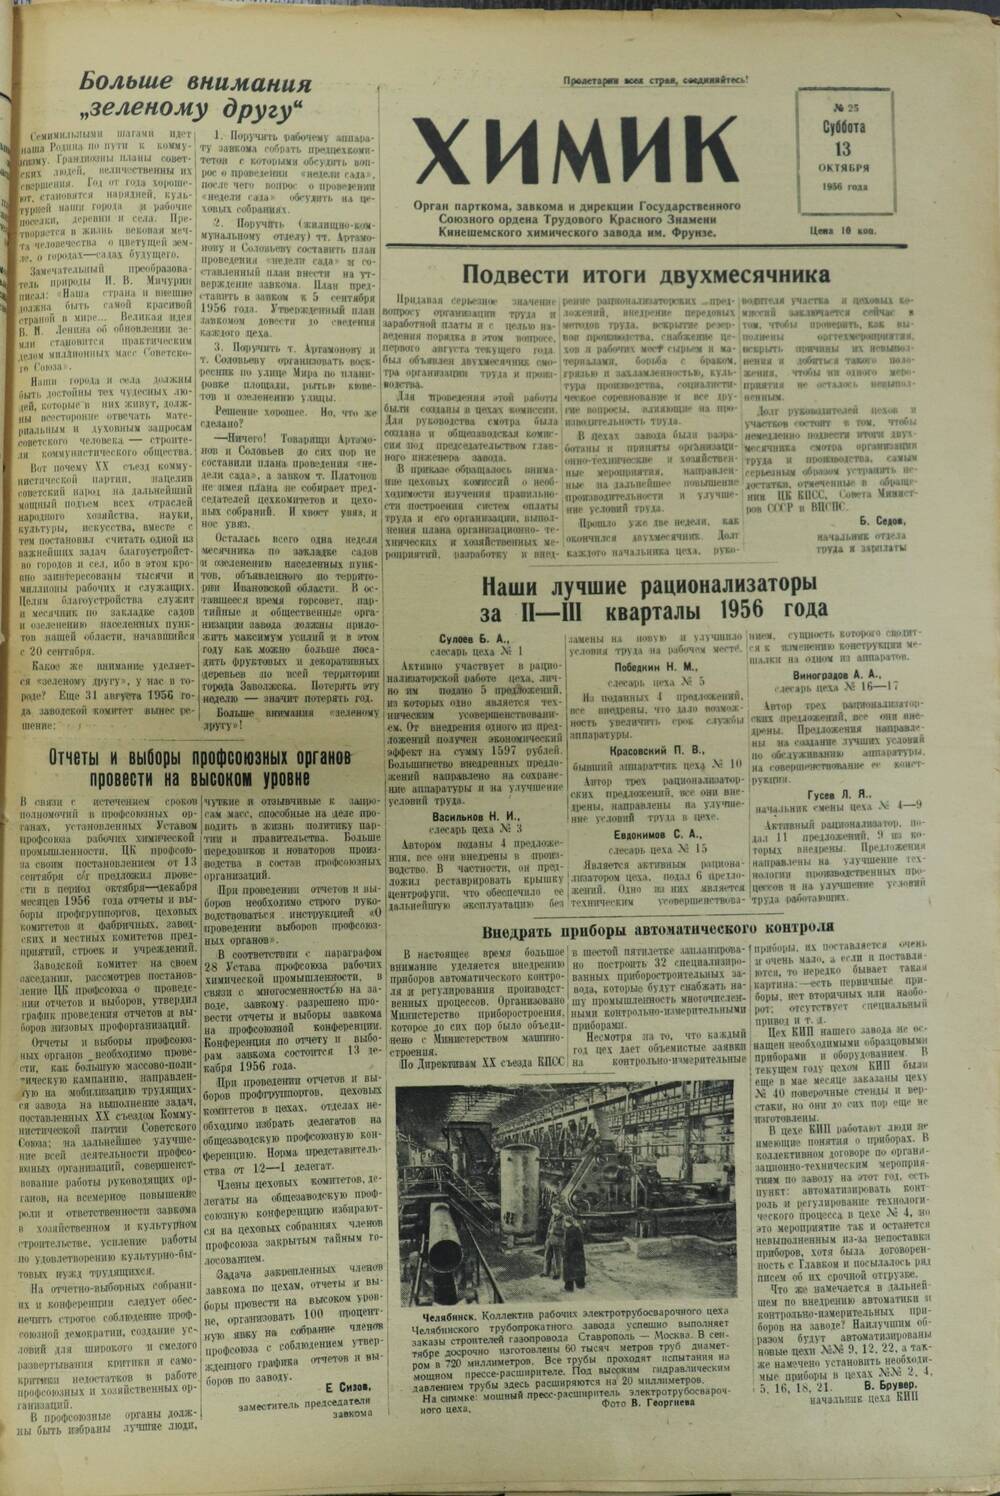 Газета «Химик» № 25 от 13 октября 1956 года.